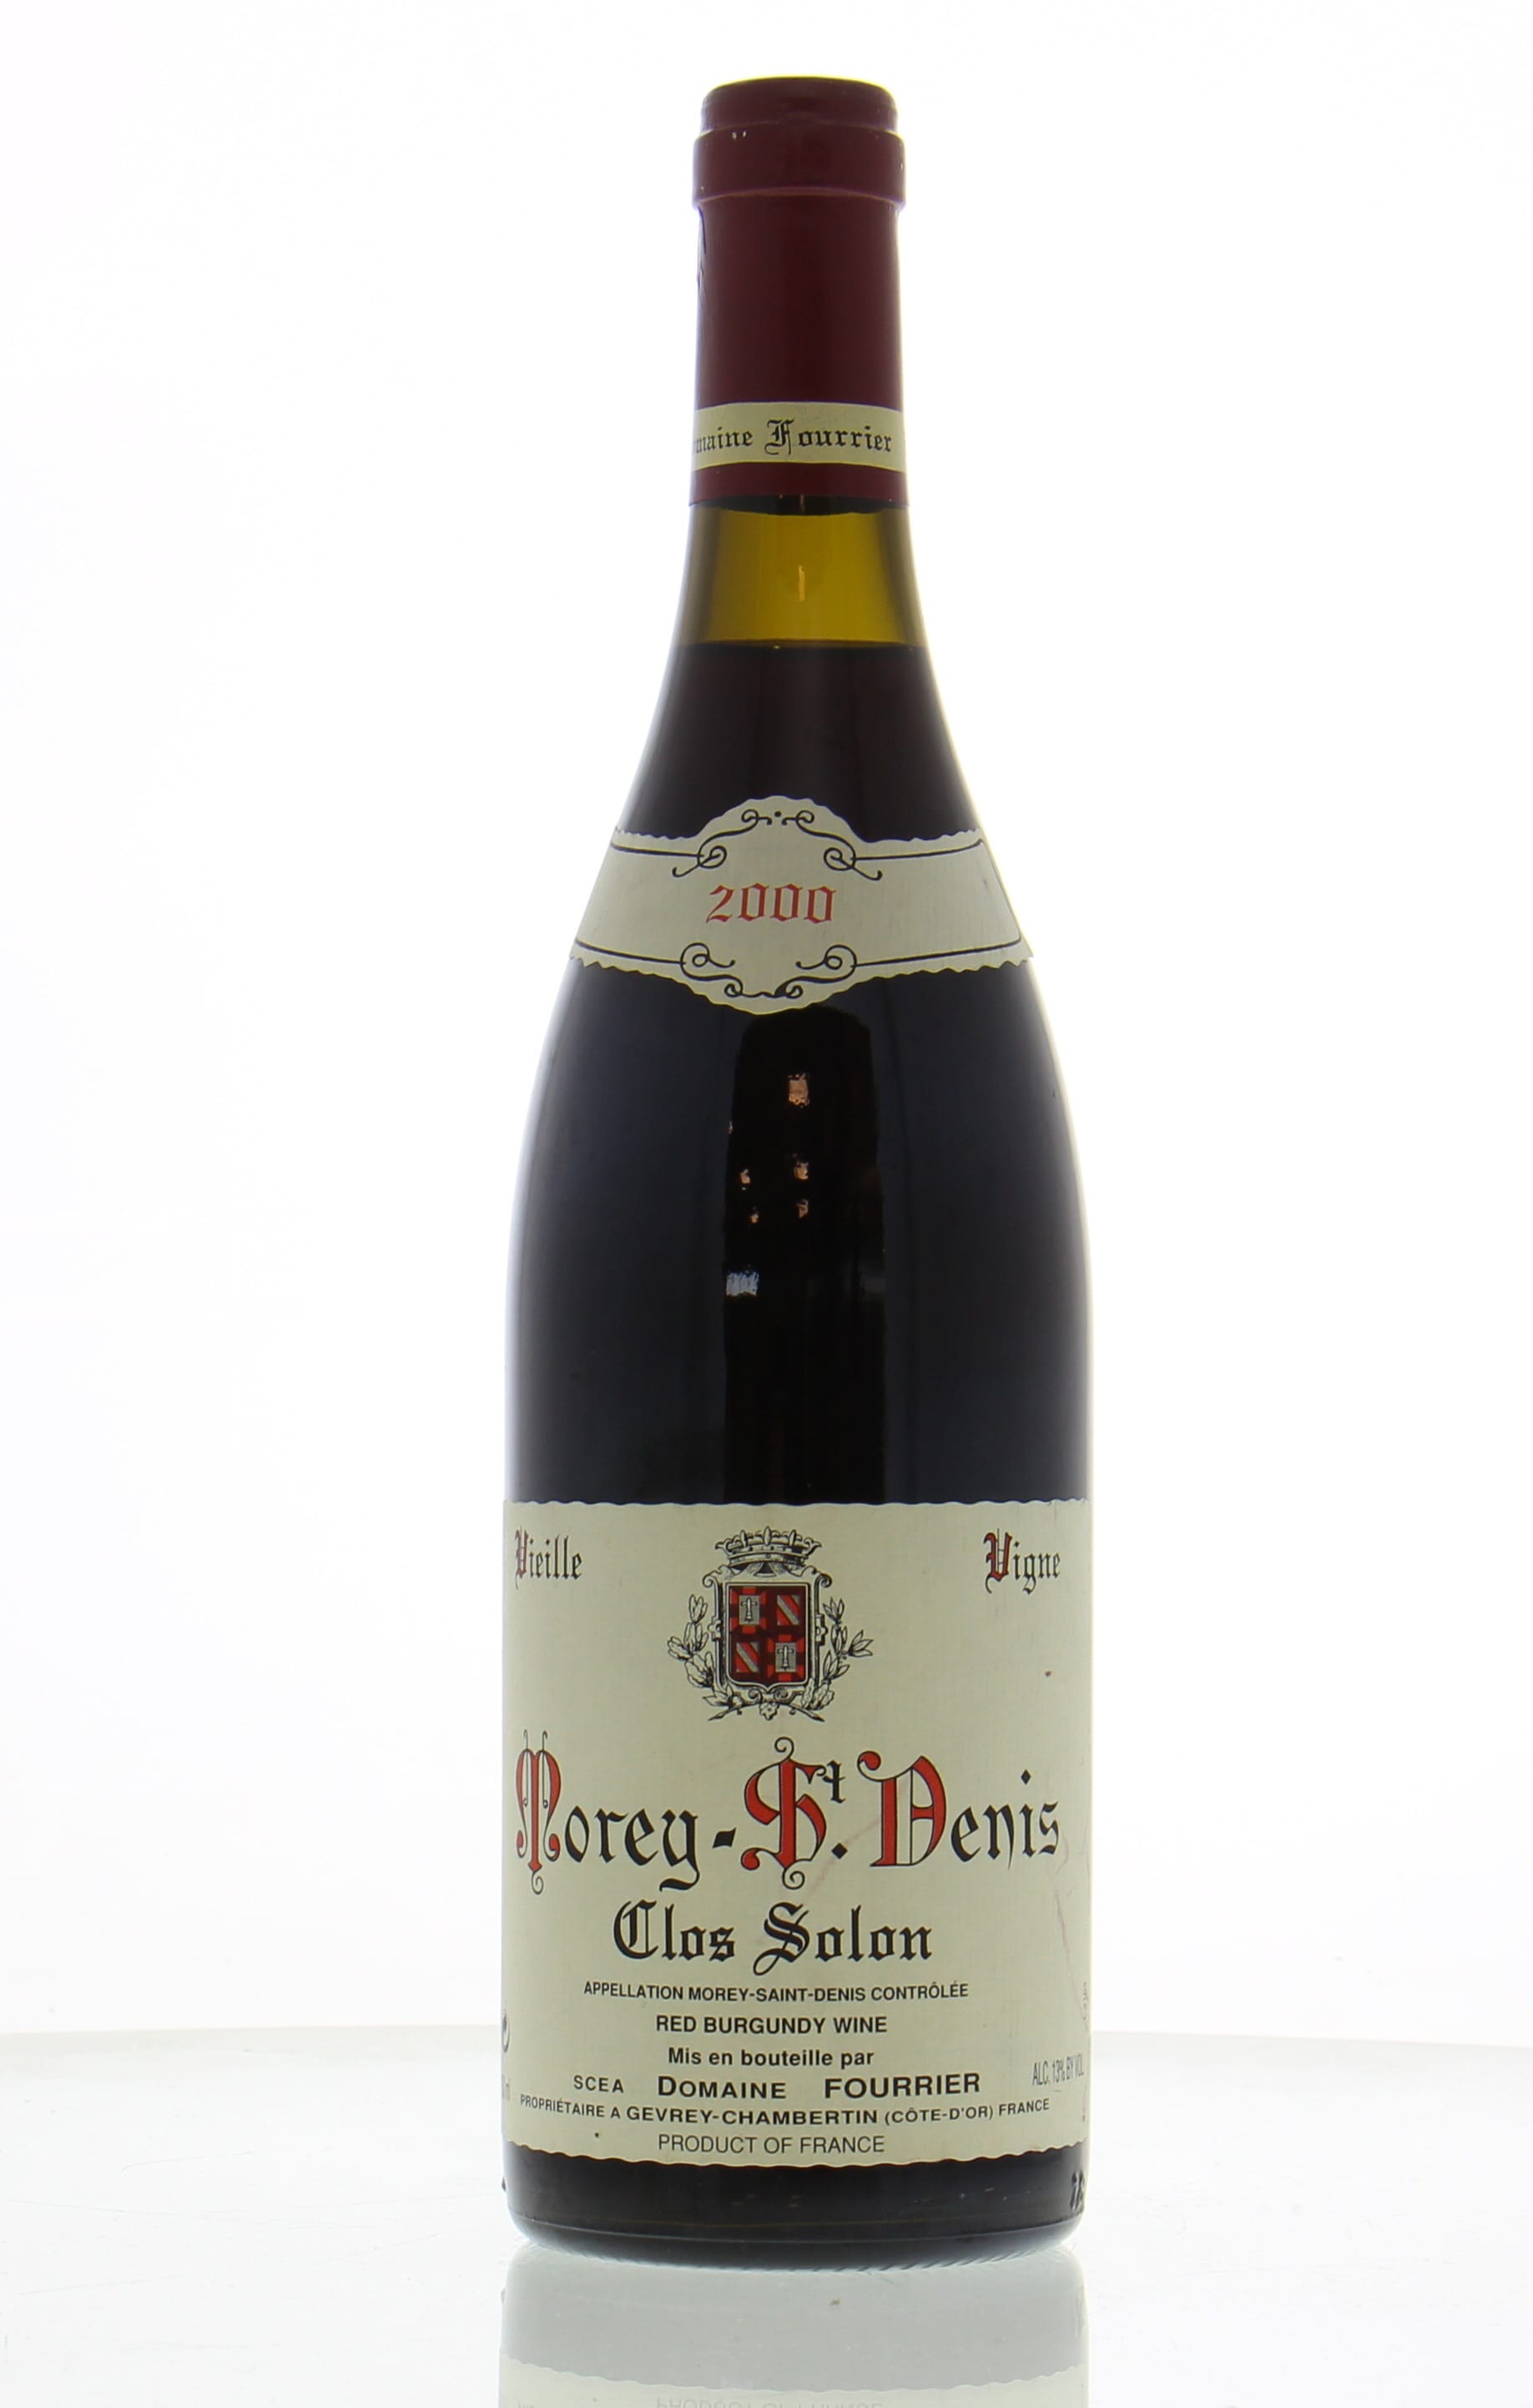 Domaine Fourrier  - Morey St Denis Clos Solon Vieille Vignes 2000 Perfect